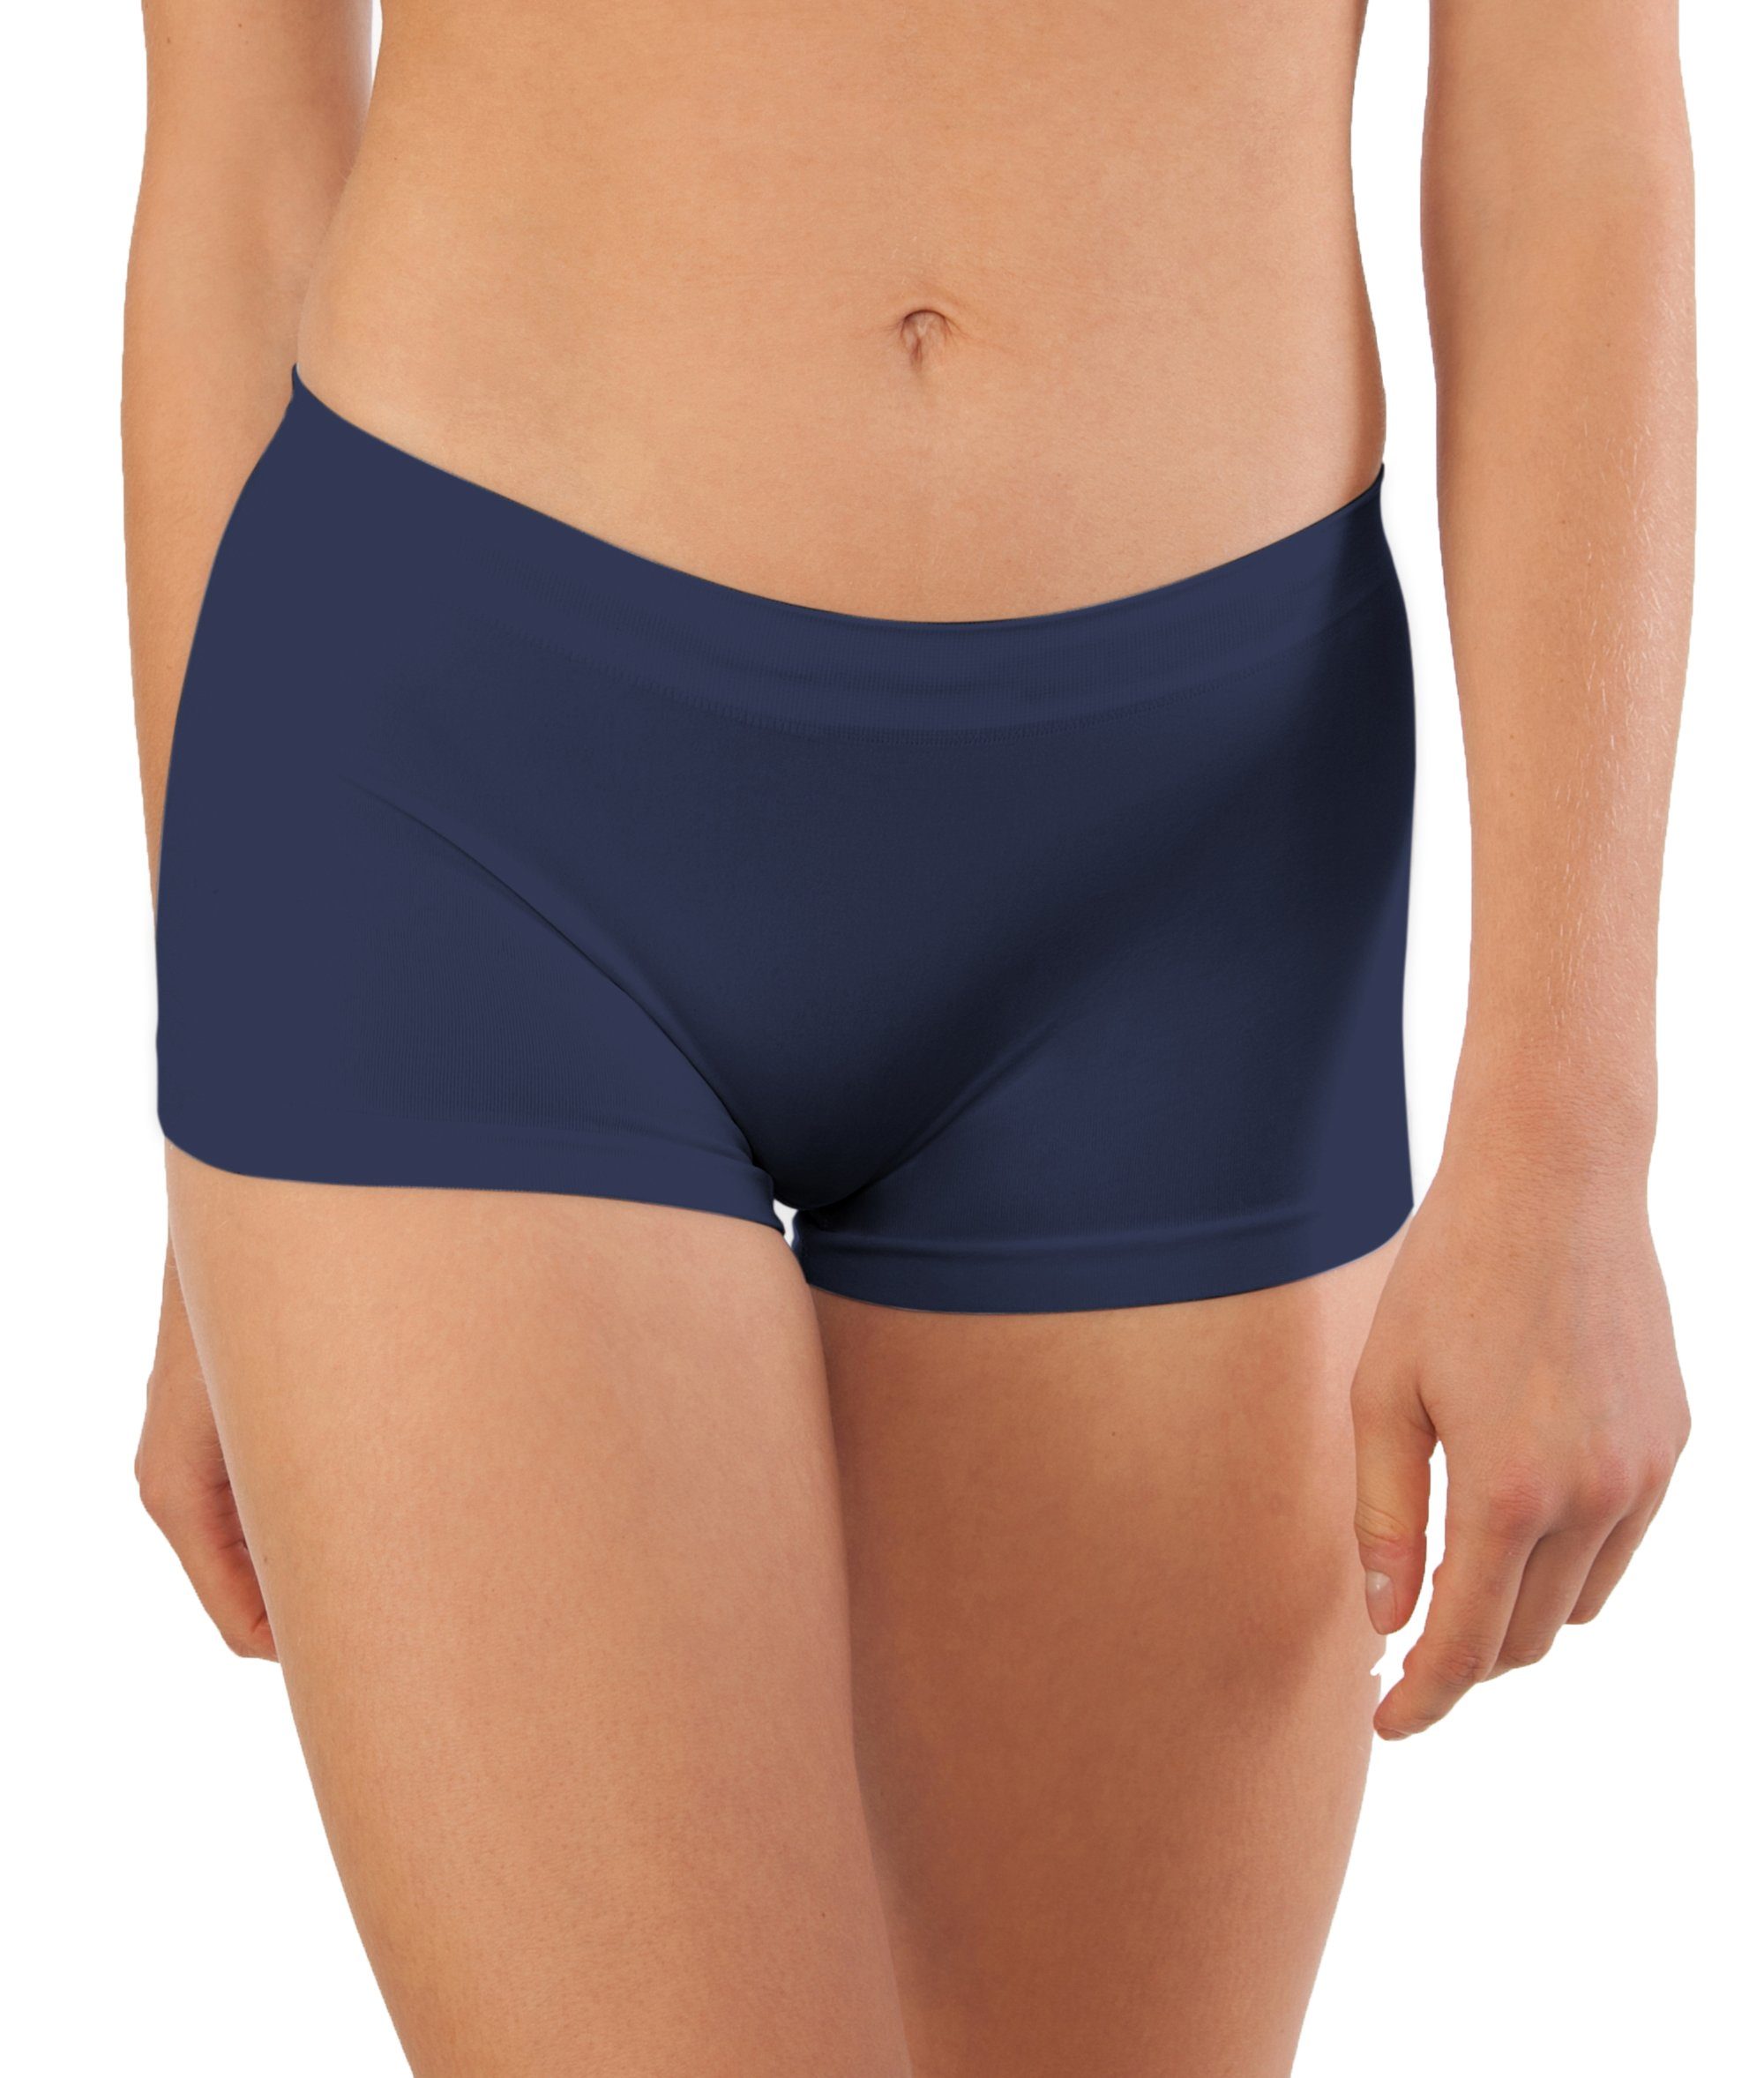 Fabio Farini Panty »Damen Unterhosen - Frauen Boxershorts Seamless Design«  (6 Stück) angenehmes Tragegefühl ohne Nähte, zufällig ausgewählte Farben  online kaufen | OTTO